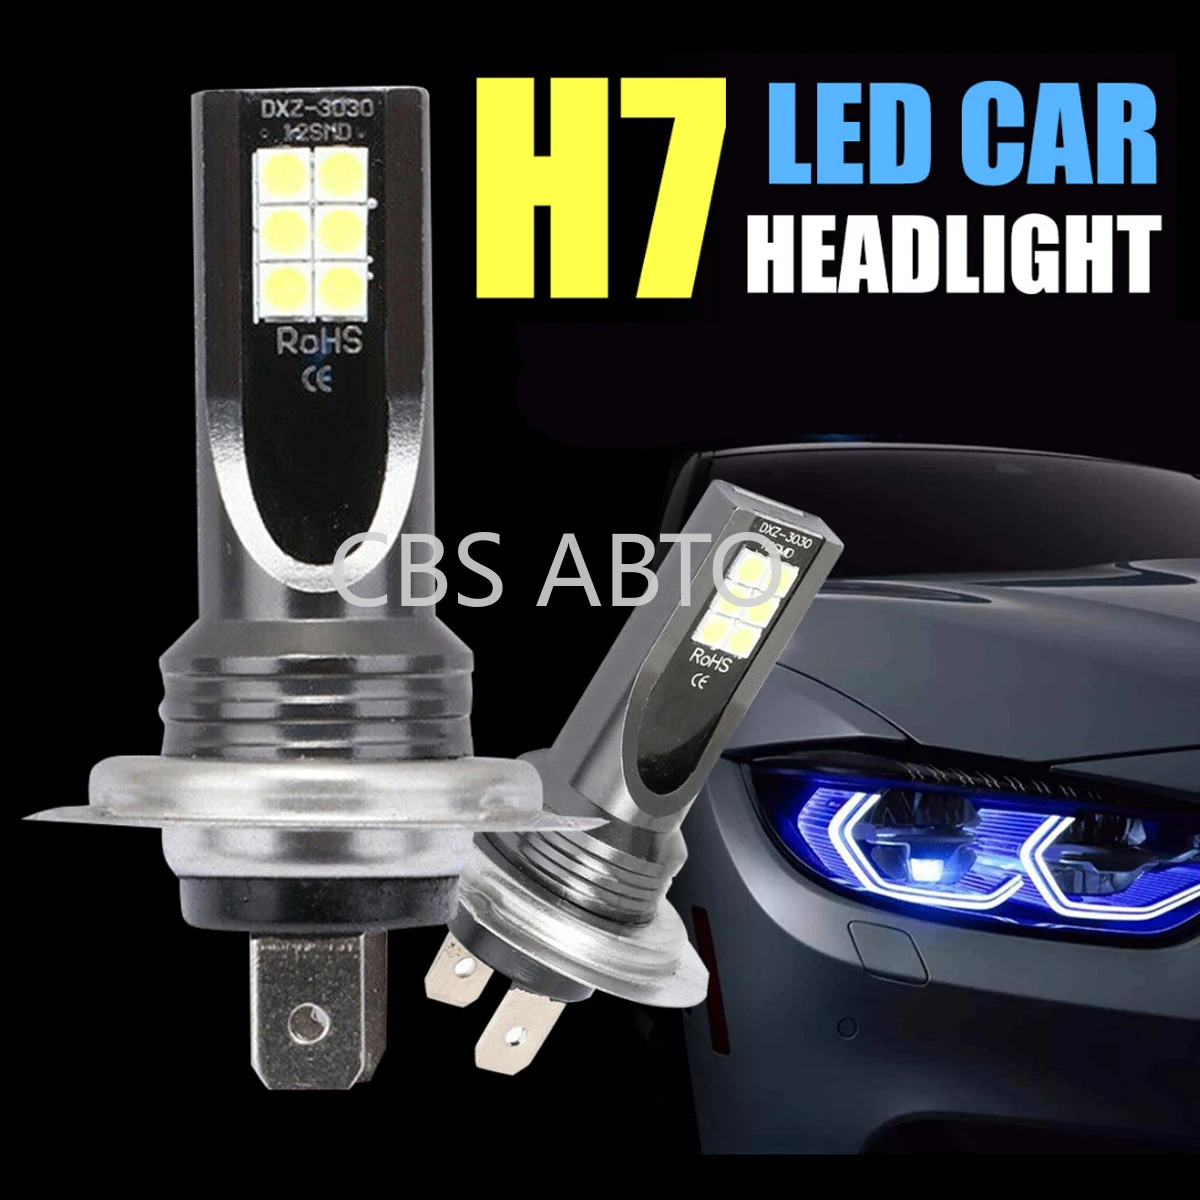 

CBS ABTO 2pcs DC9-32V H7 110W 11000LM LED Car Headlight Hi/Lo Beam Fog Lamp Bulb Conversion Kit 6000K White Light